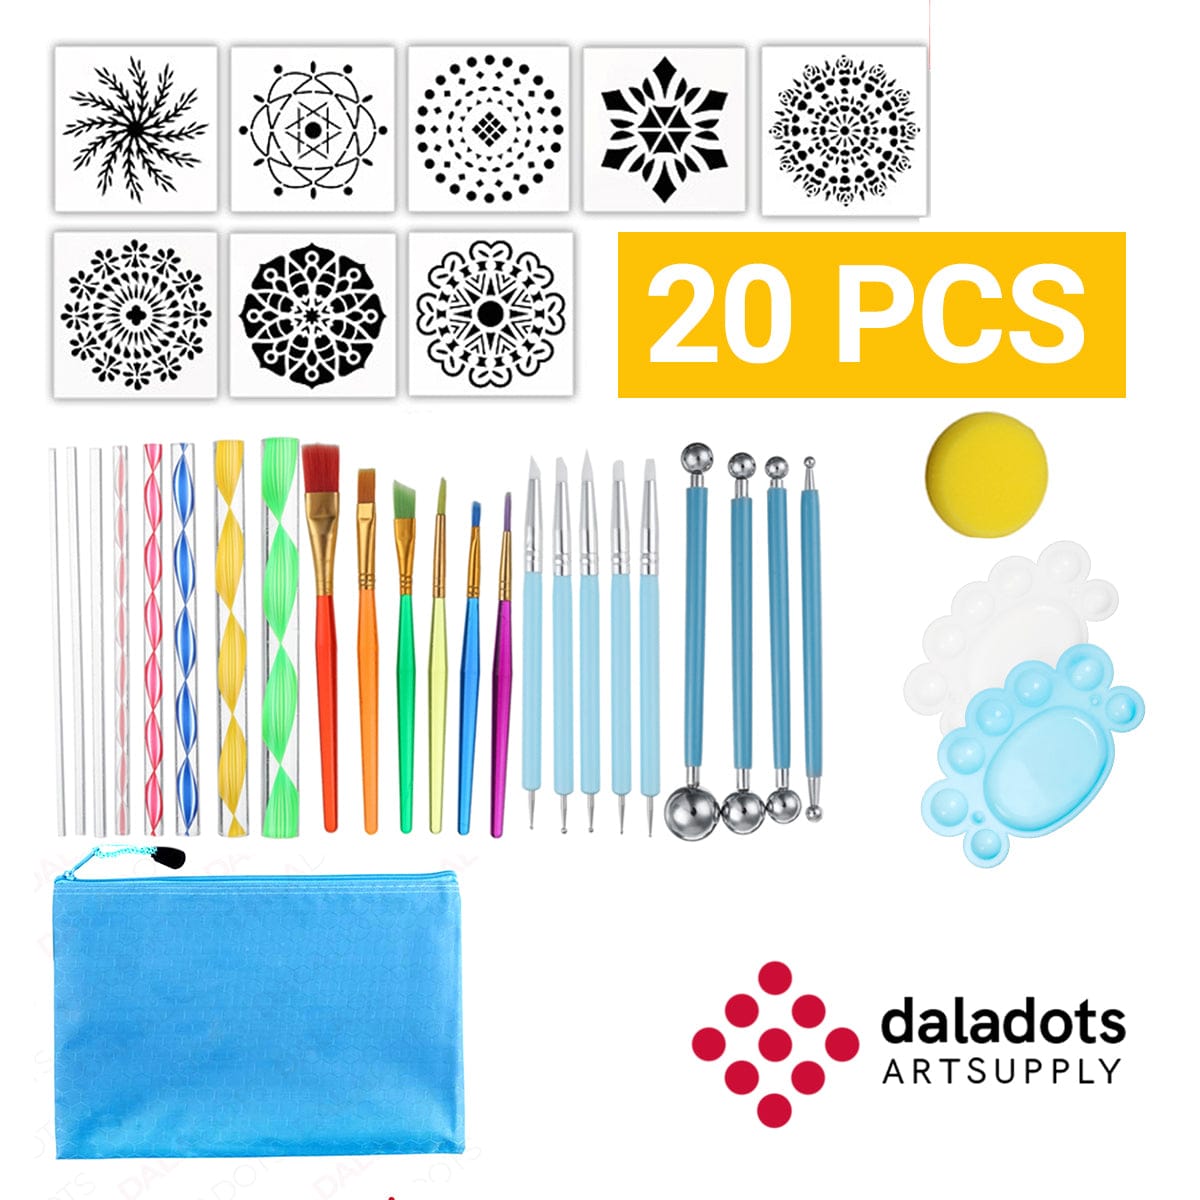 20 pcs Mandala Dotting Tools and Rock Painting Kit - Daladots